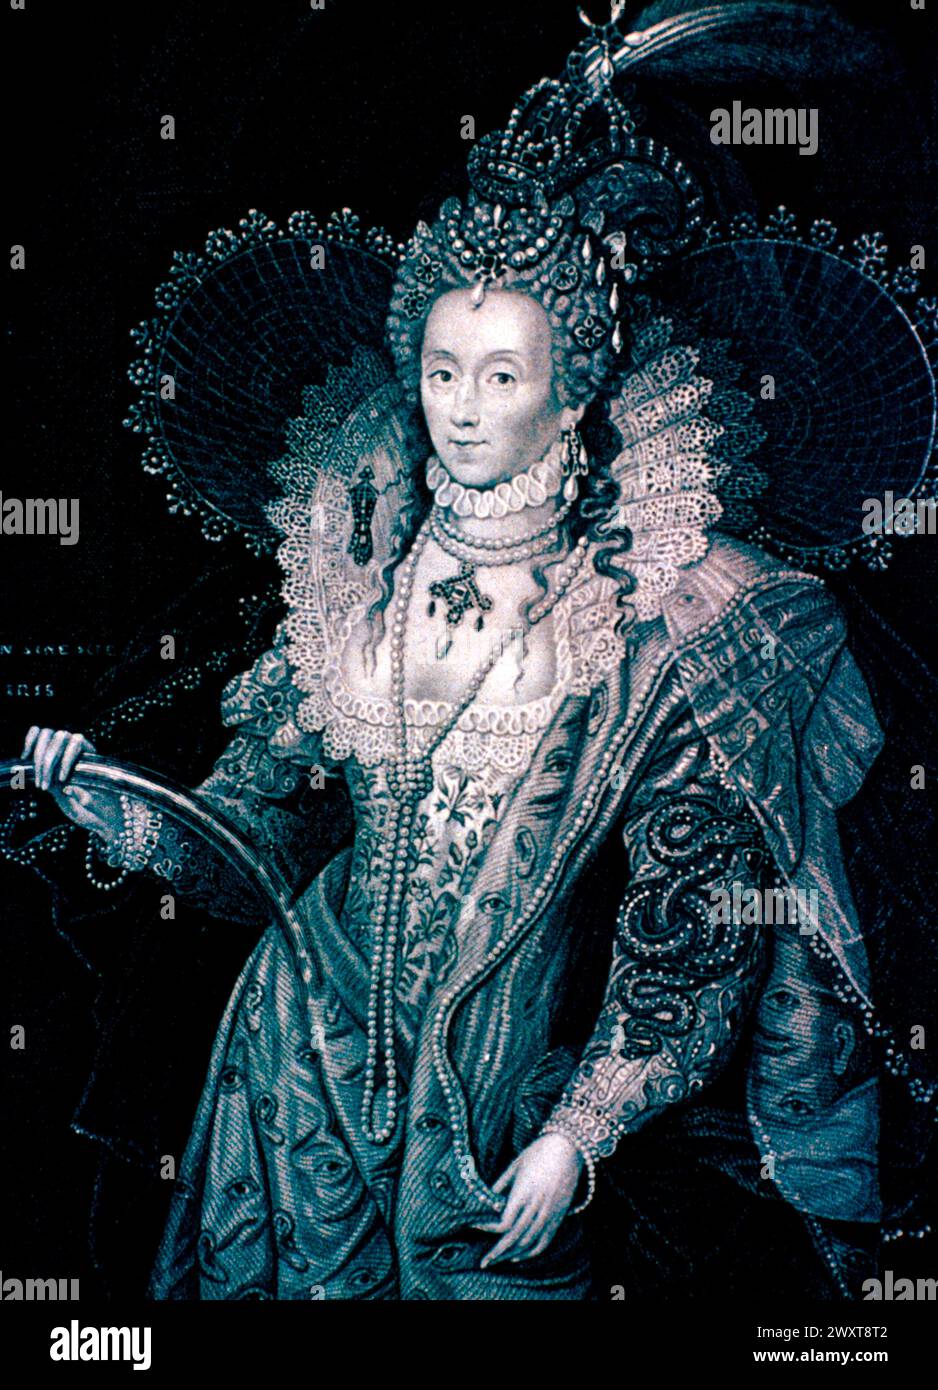 Portrait de la reine Élisabeth Ire d'Angleterre, peinture du XVIe siècle Banque D'Images